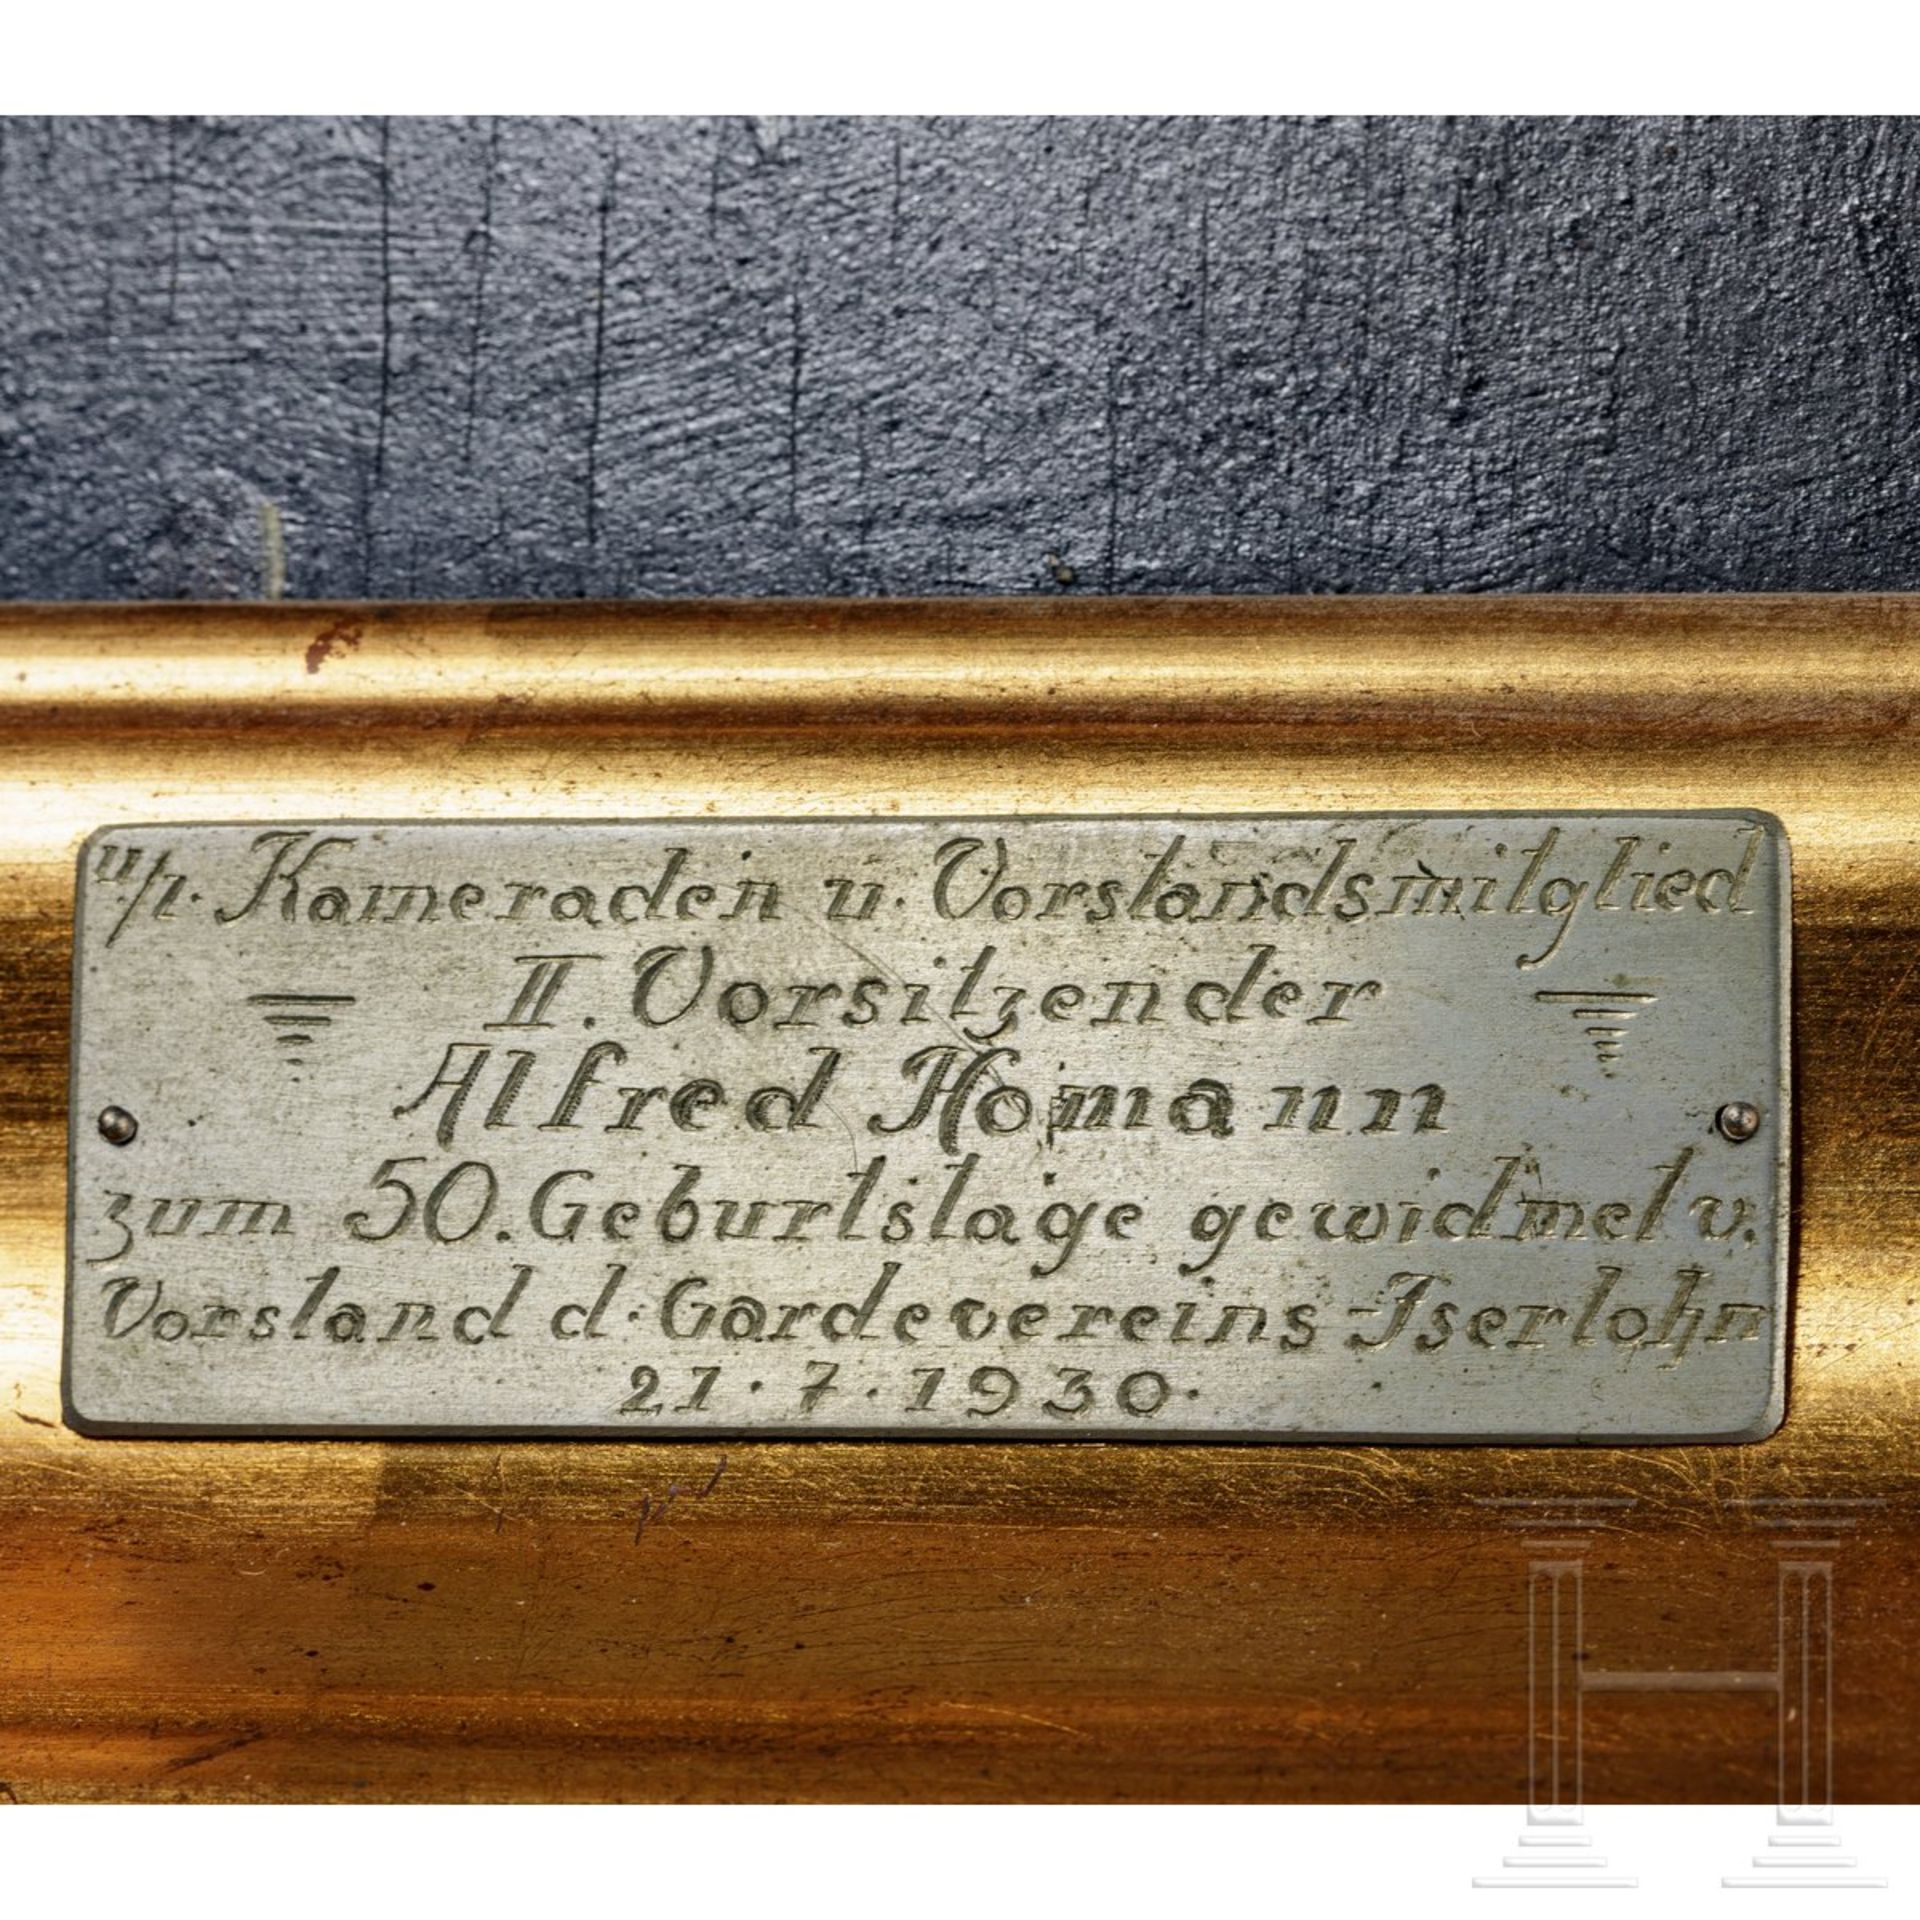 Gardeverein Iserlohn - Geschenkbild Friedrich der Große, datiert 1930 - Image 4 of 5